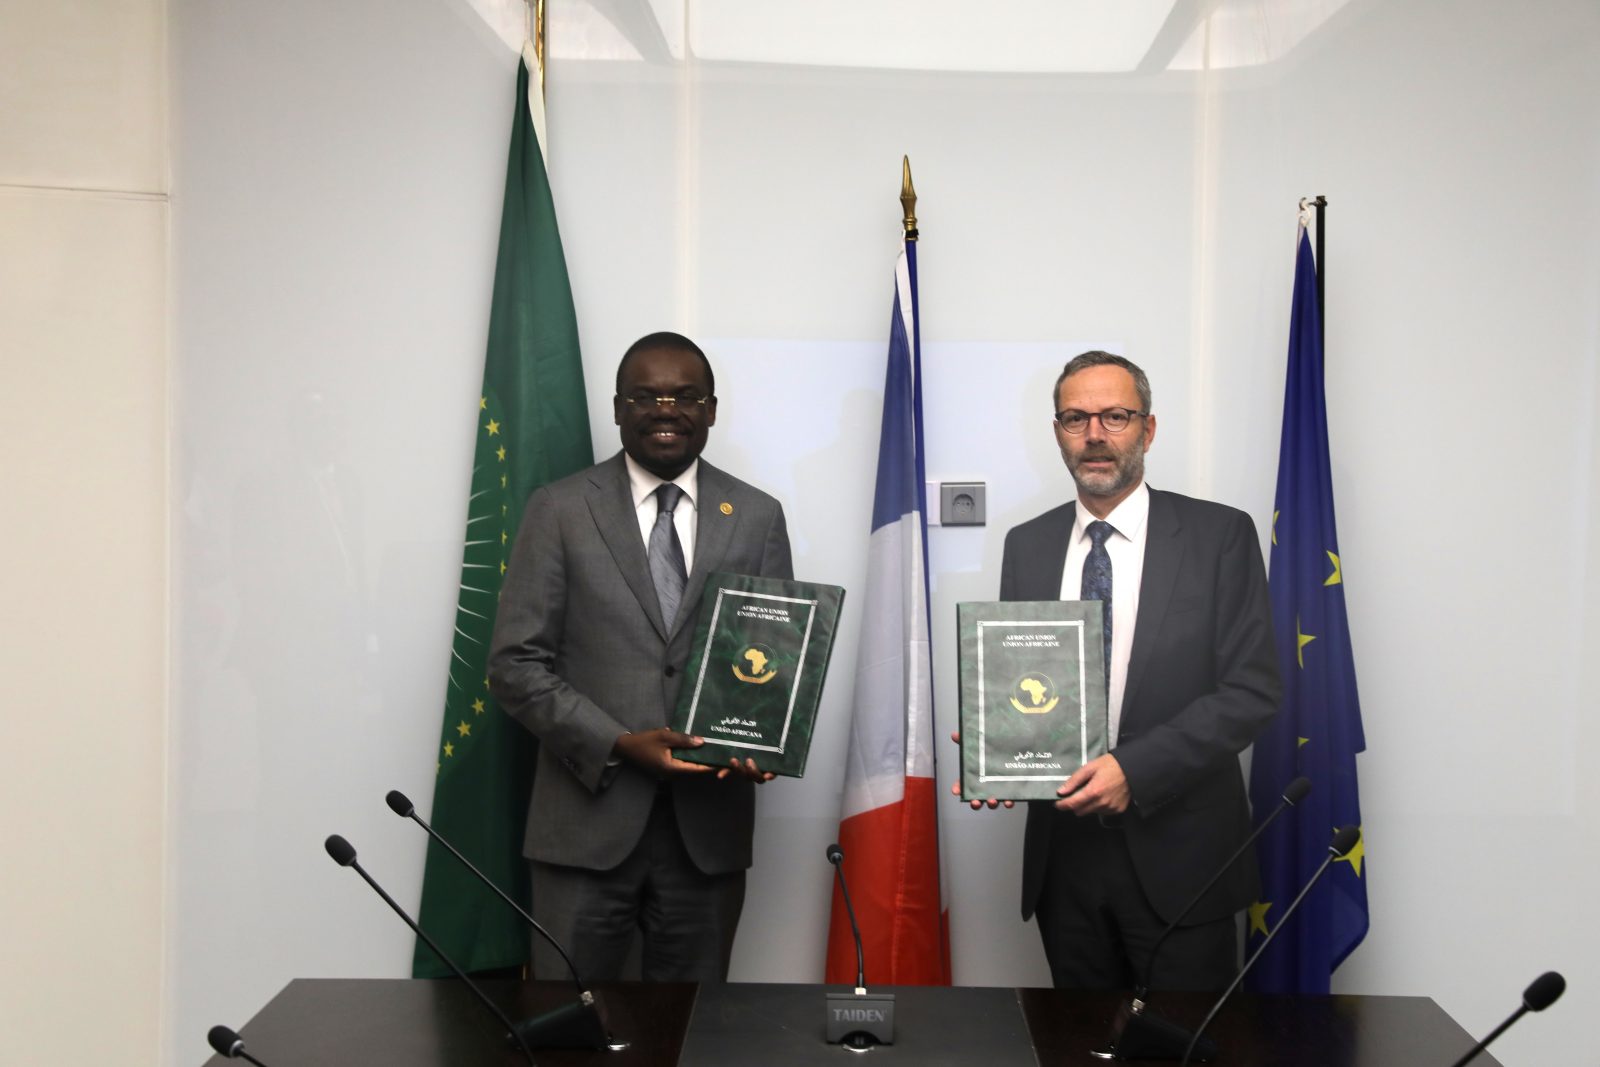 Photo of Africa CDC et la France signent un protocole d’accord pour renforcer les systèmes de santé publique en Afrique – Africa CDC